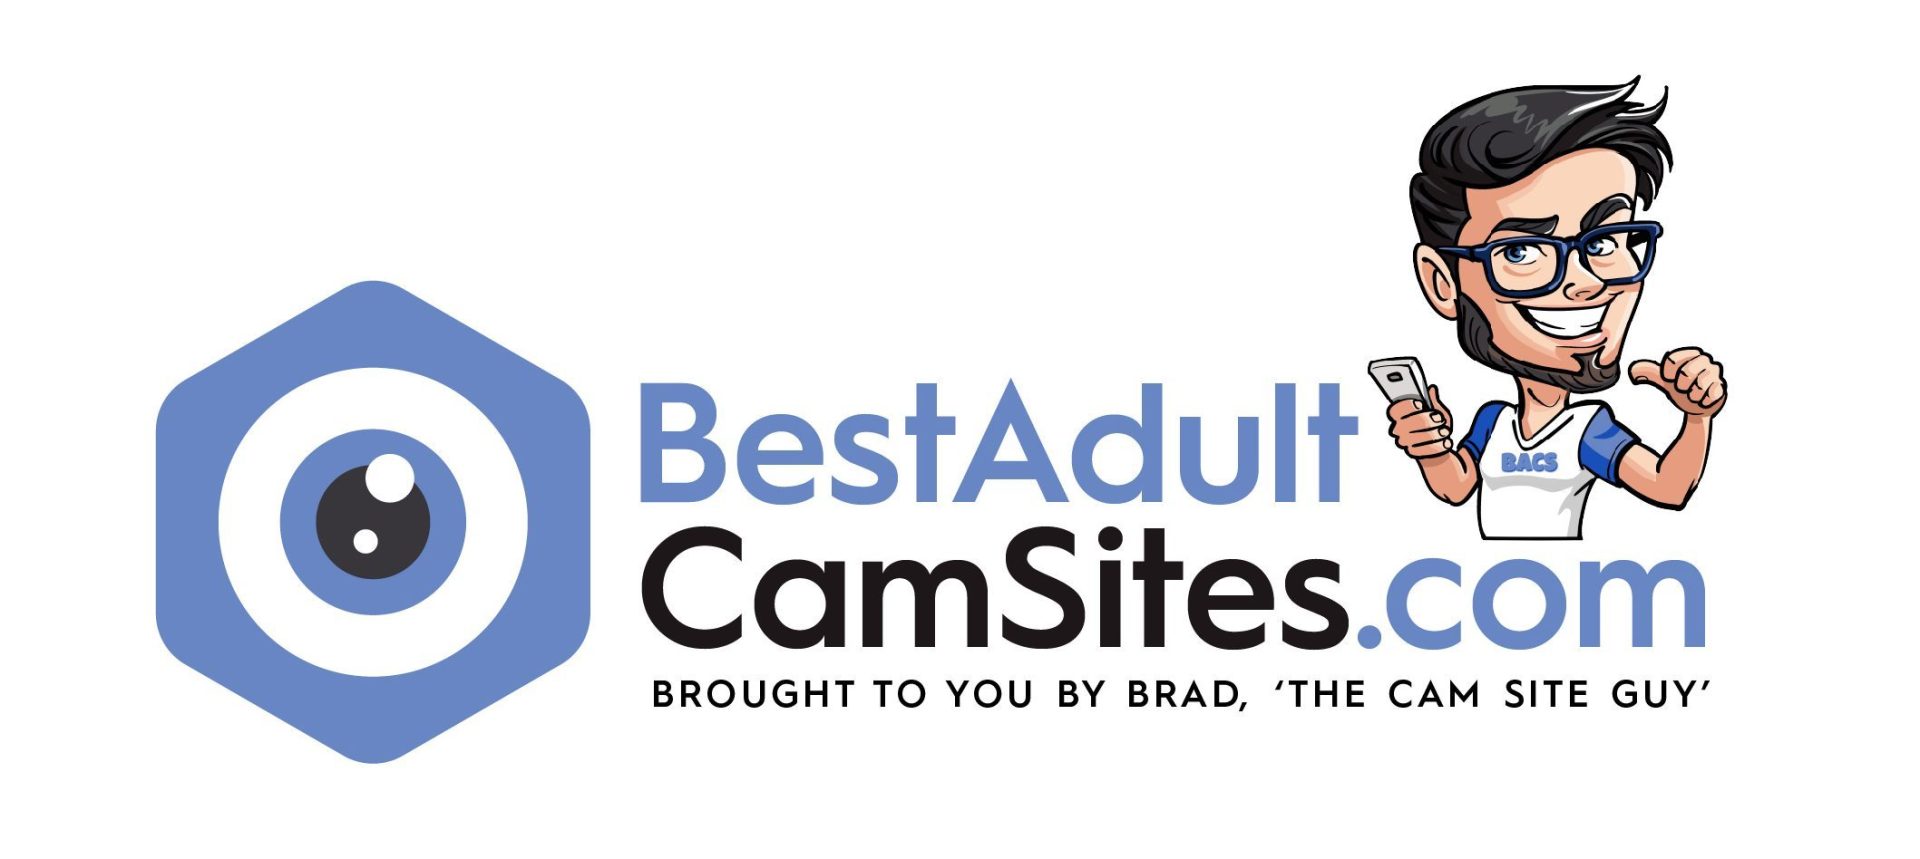 Best adult cam sites